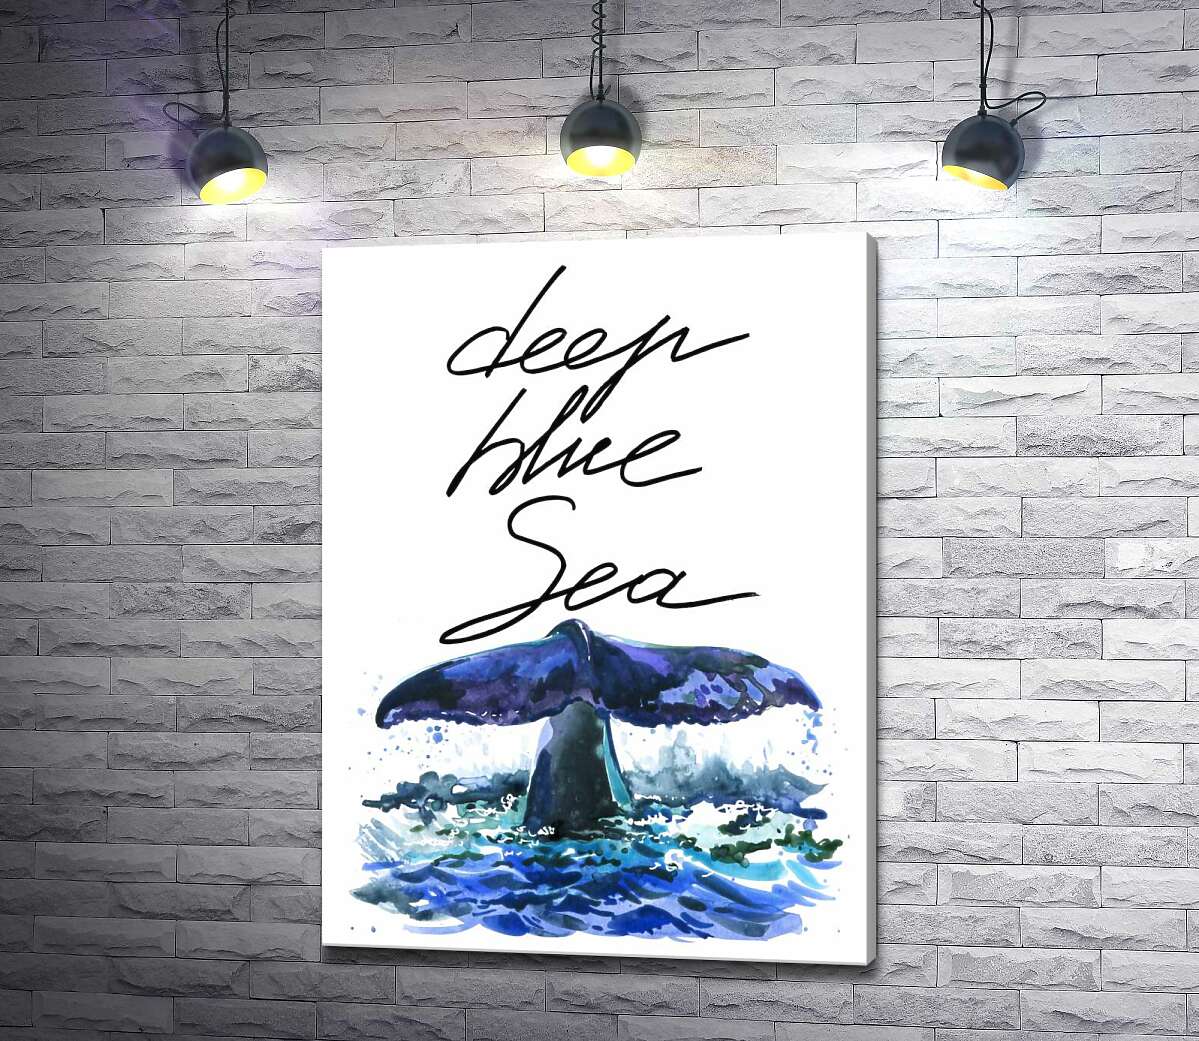 картина Хвост кита над водной поверхностью рядом с надписью "deep blue sea"